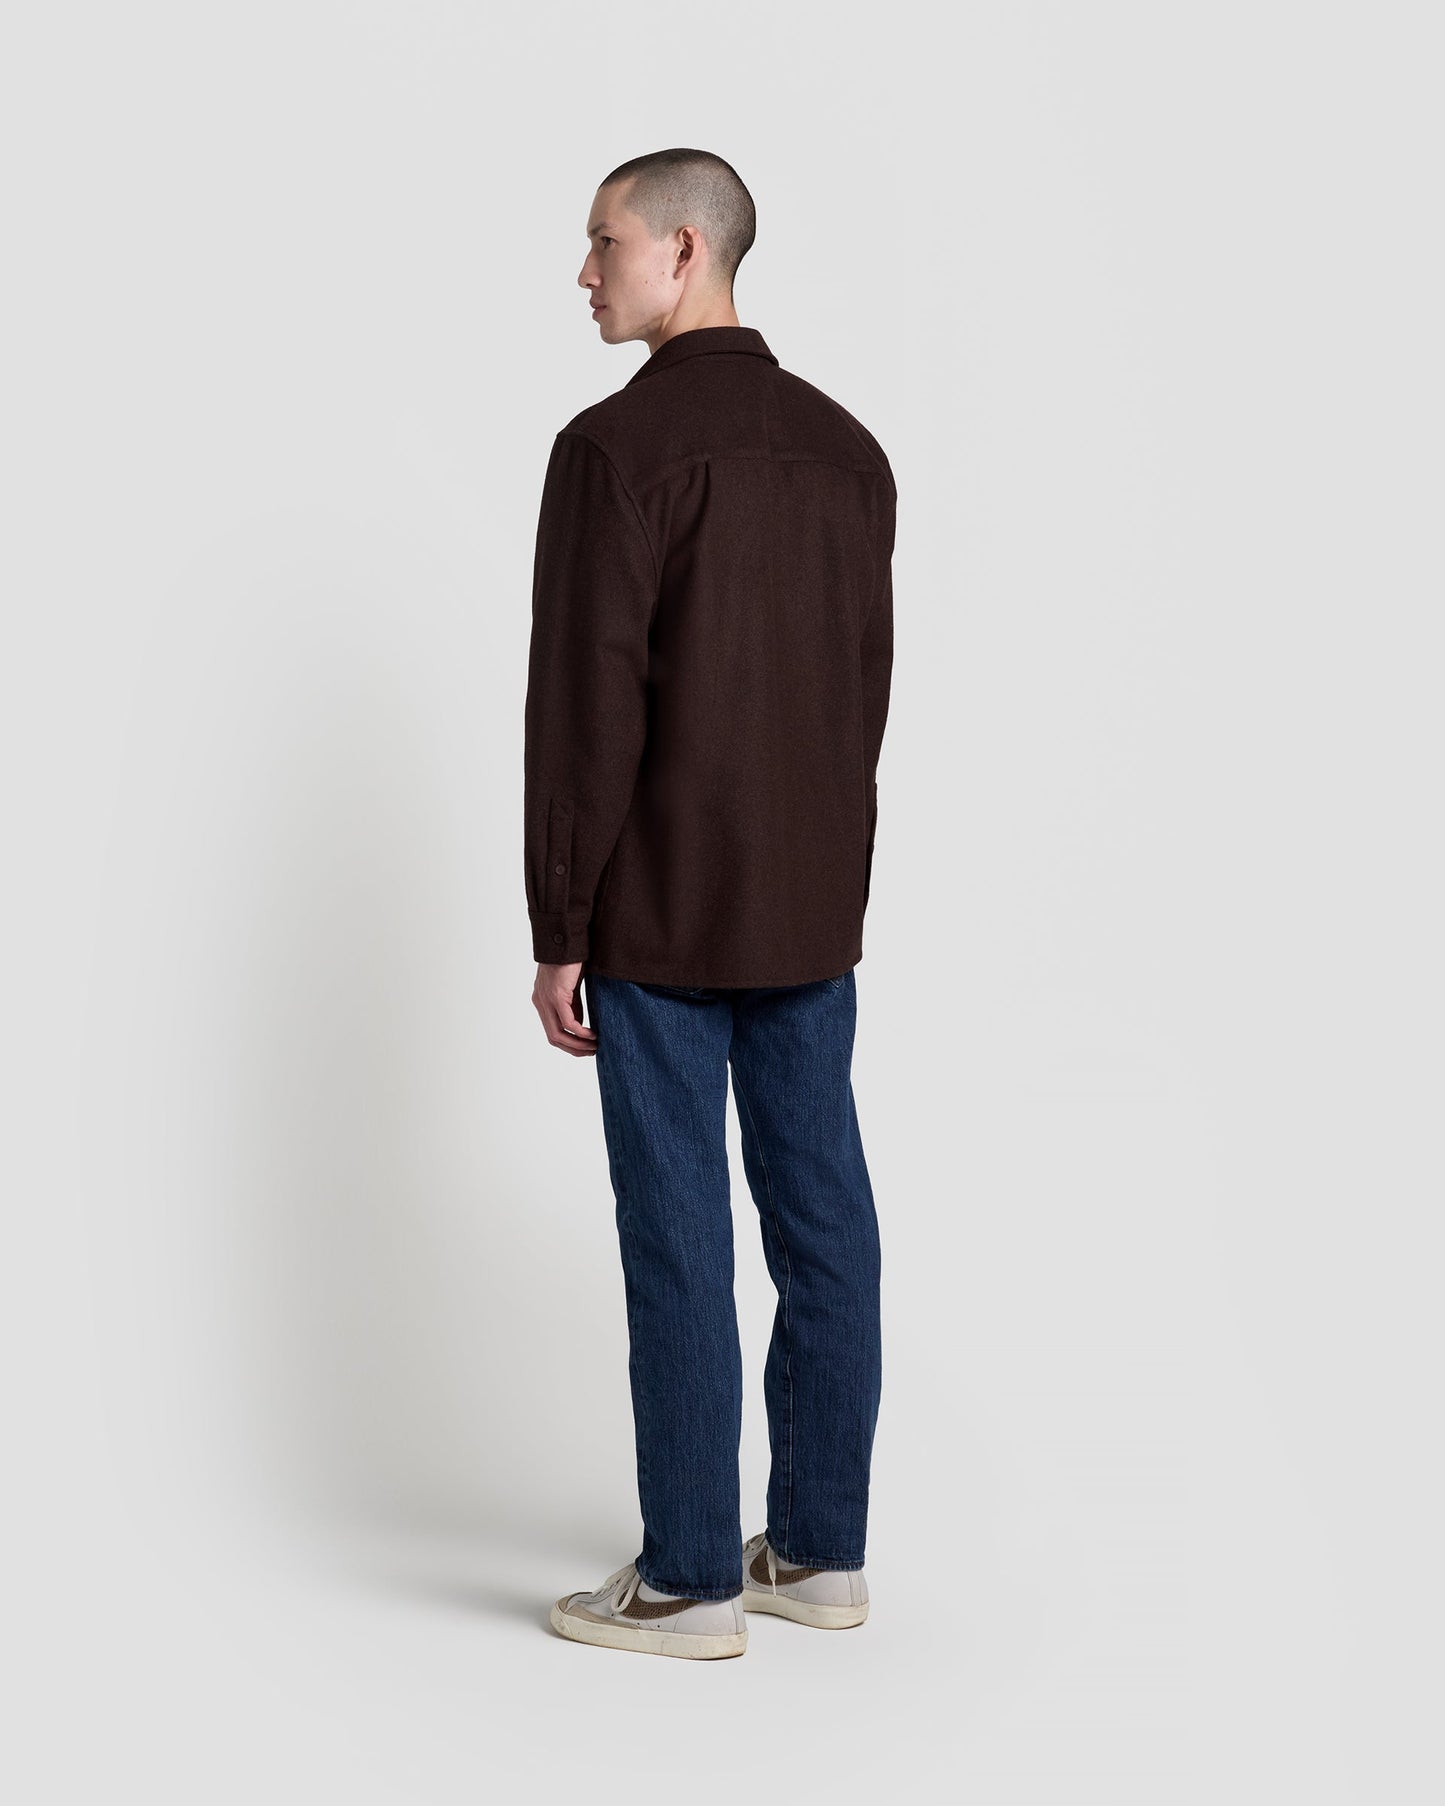 Speckeld Brown Shirt Jacket